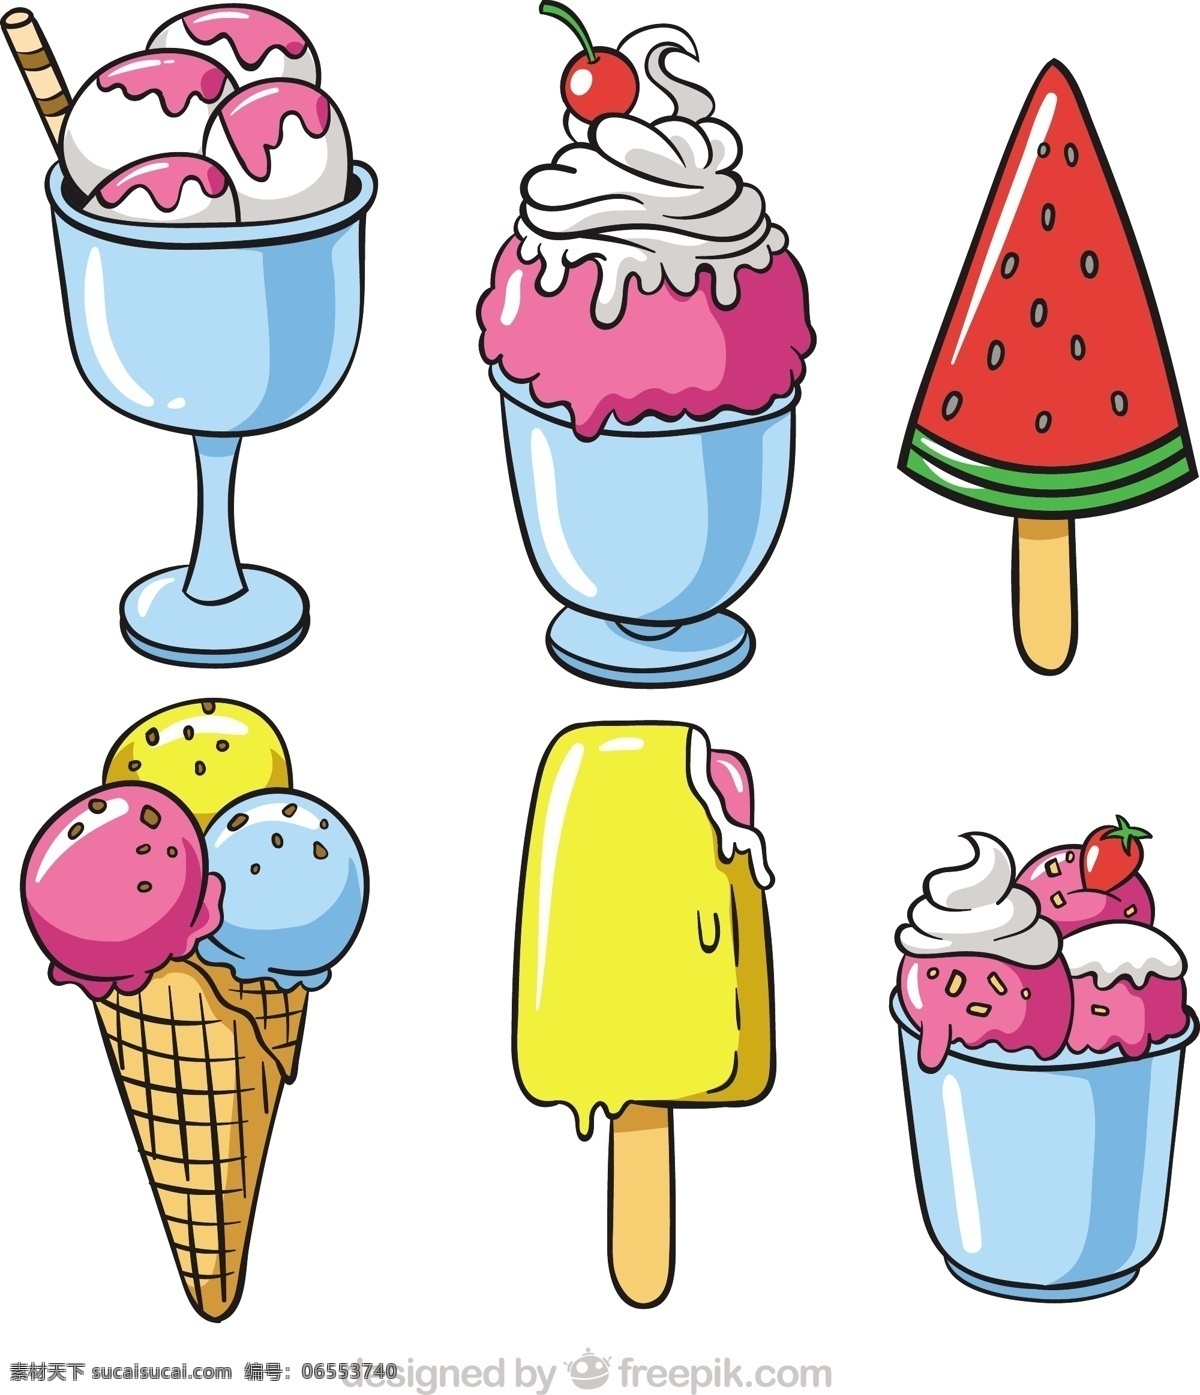 手绘 选择 开胃 夏季 甜品 食物方面 夏天 冰淇淋 颜色 冰 甜 甜点 吃 季节 绘制粗略 锥 美味的选择 味道